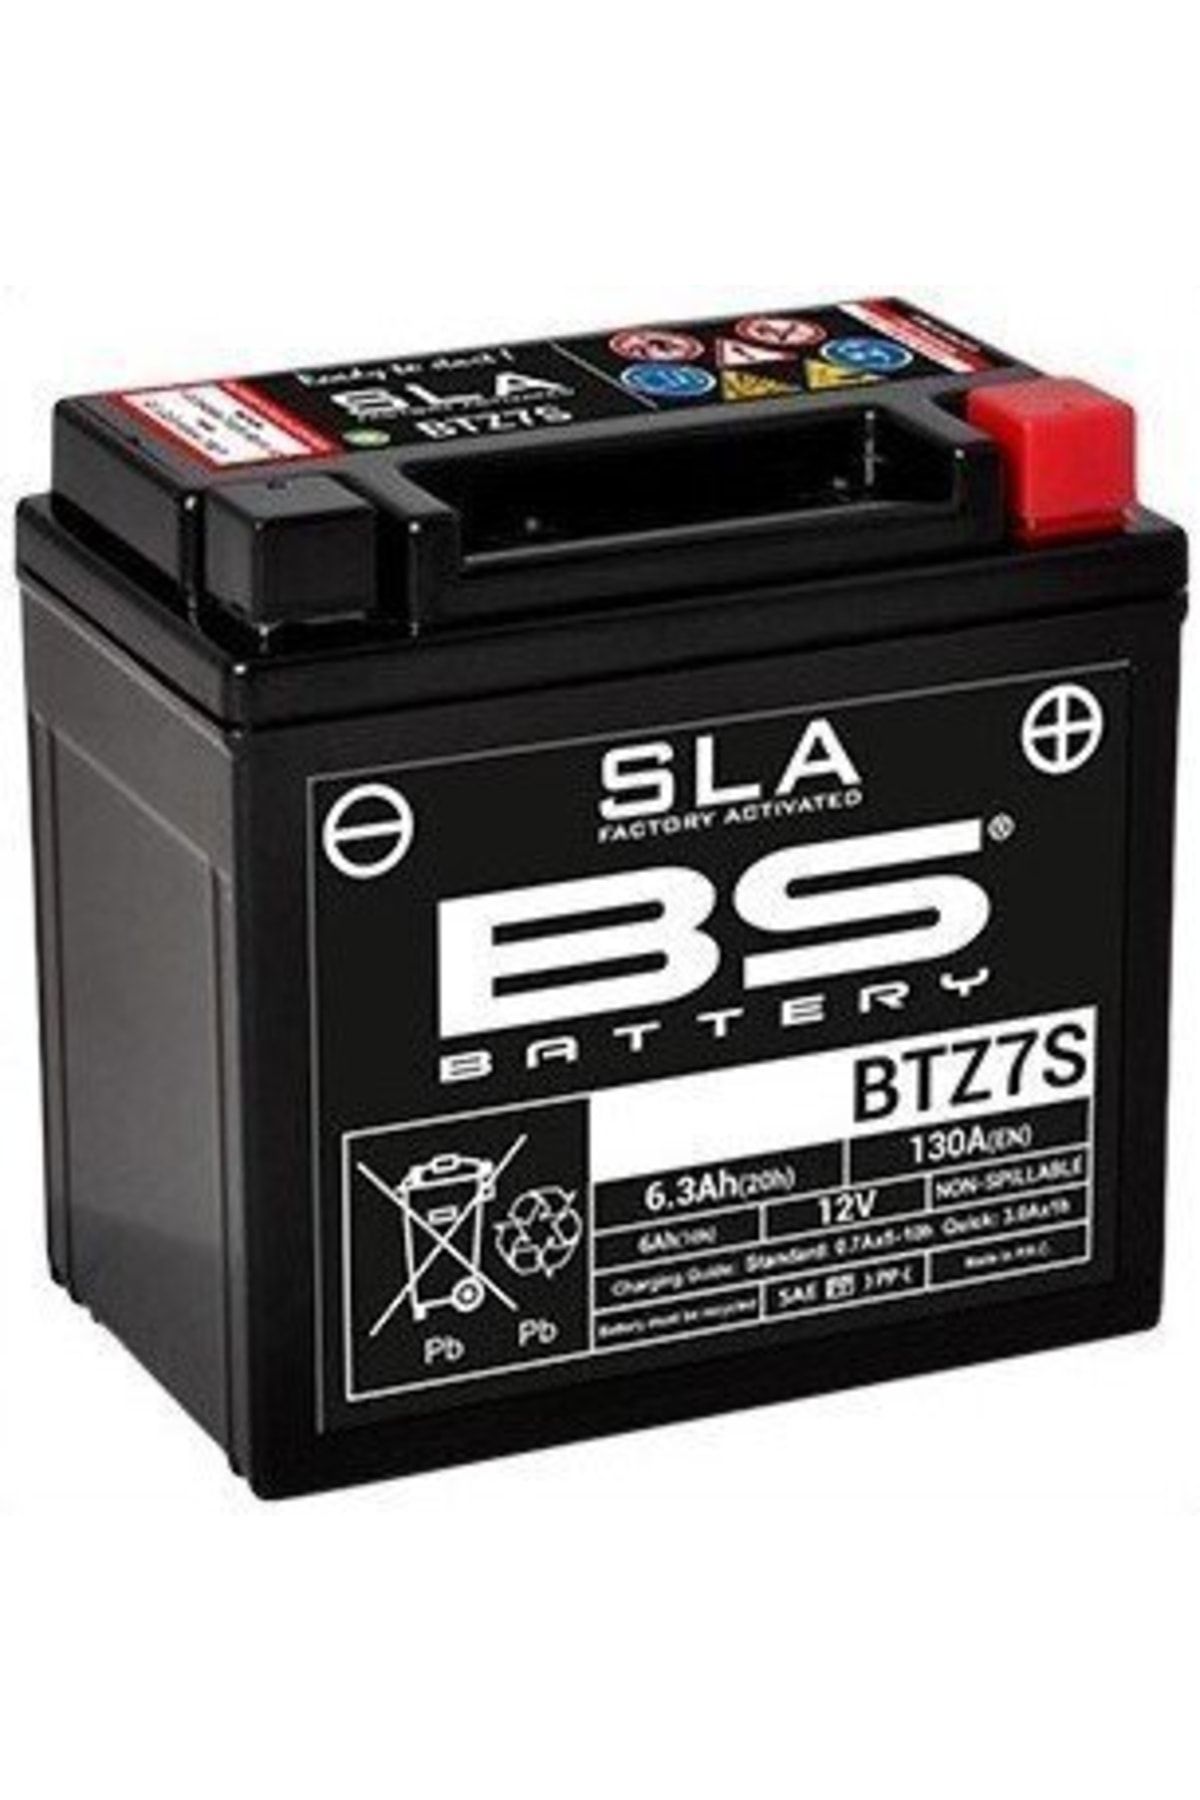 BS Battery Beta 350 Rr Enduro 4t Btz7s-sla Motosiklet Aküsü